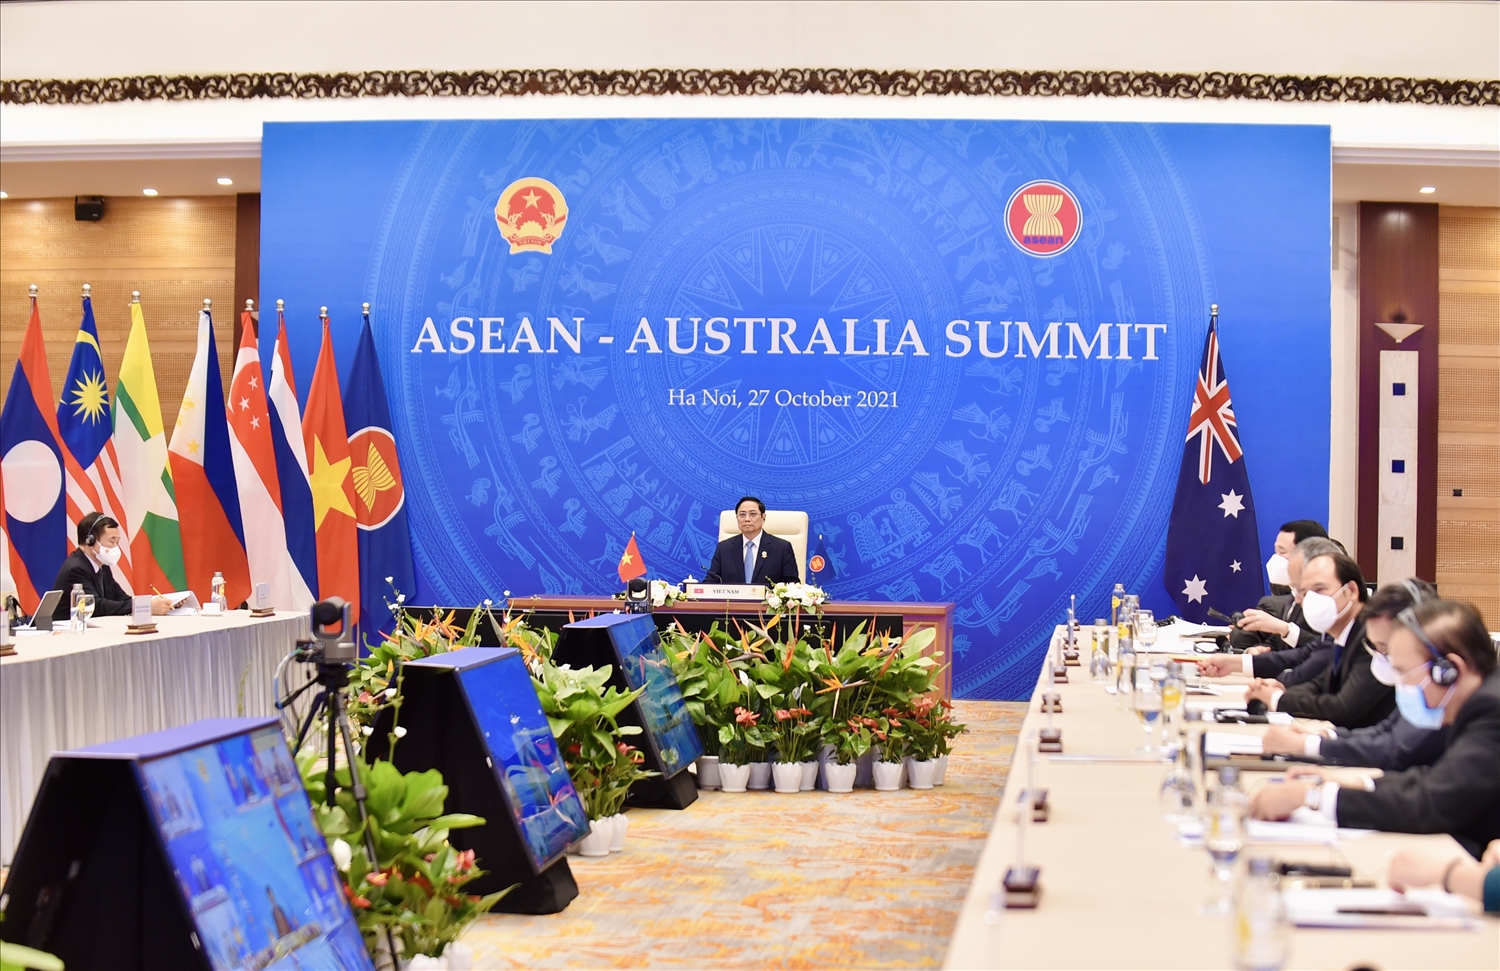 Kết thúc Hội nghị, Lãnh đạo ASEAN và Australia nhất trí nâng cấp quan hệ ASEAN- Australia lên Đối tác Chiến lược Toàn diện. Ảnh: VGP/Nhật Bắc